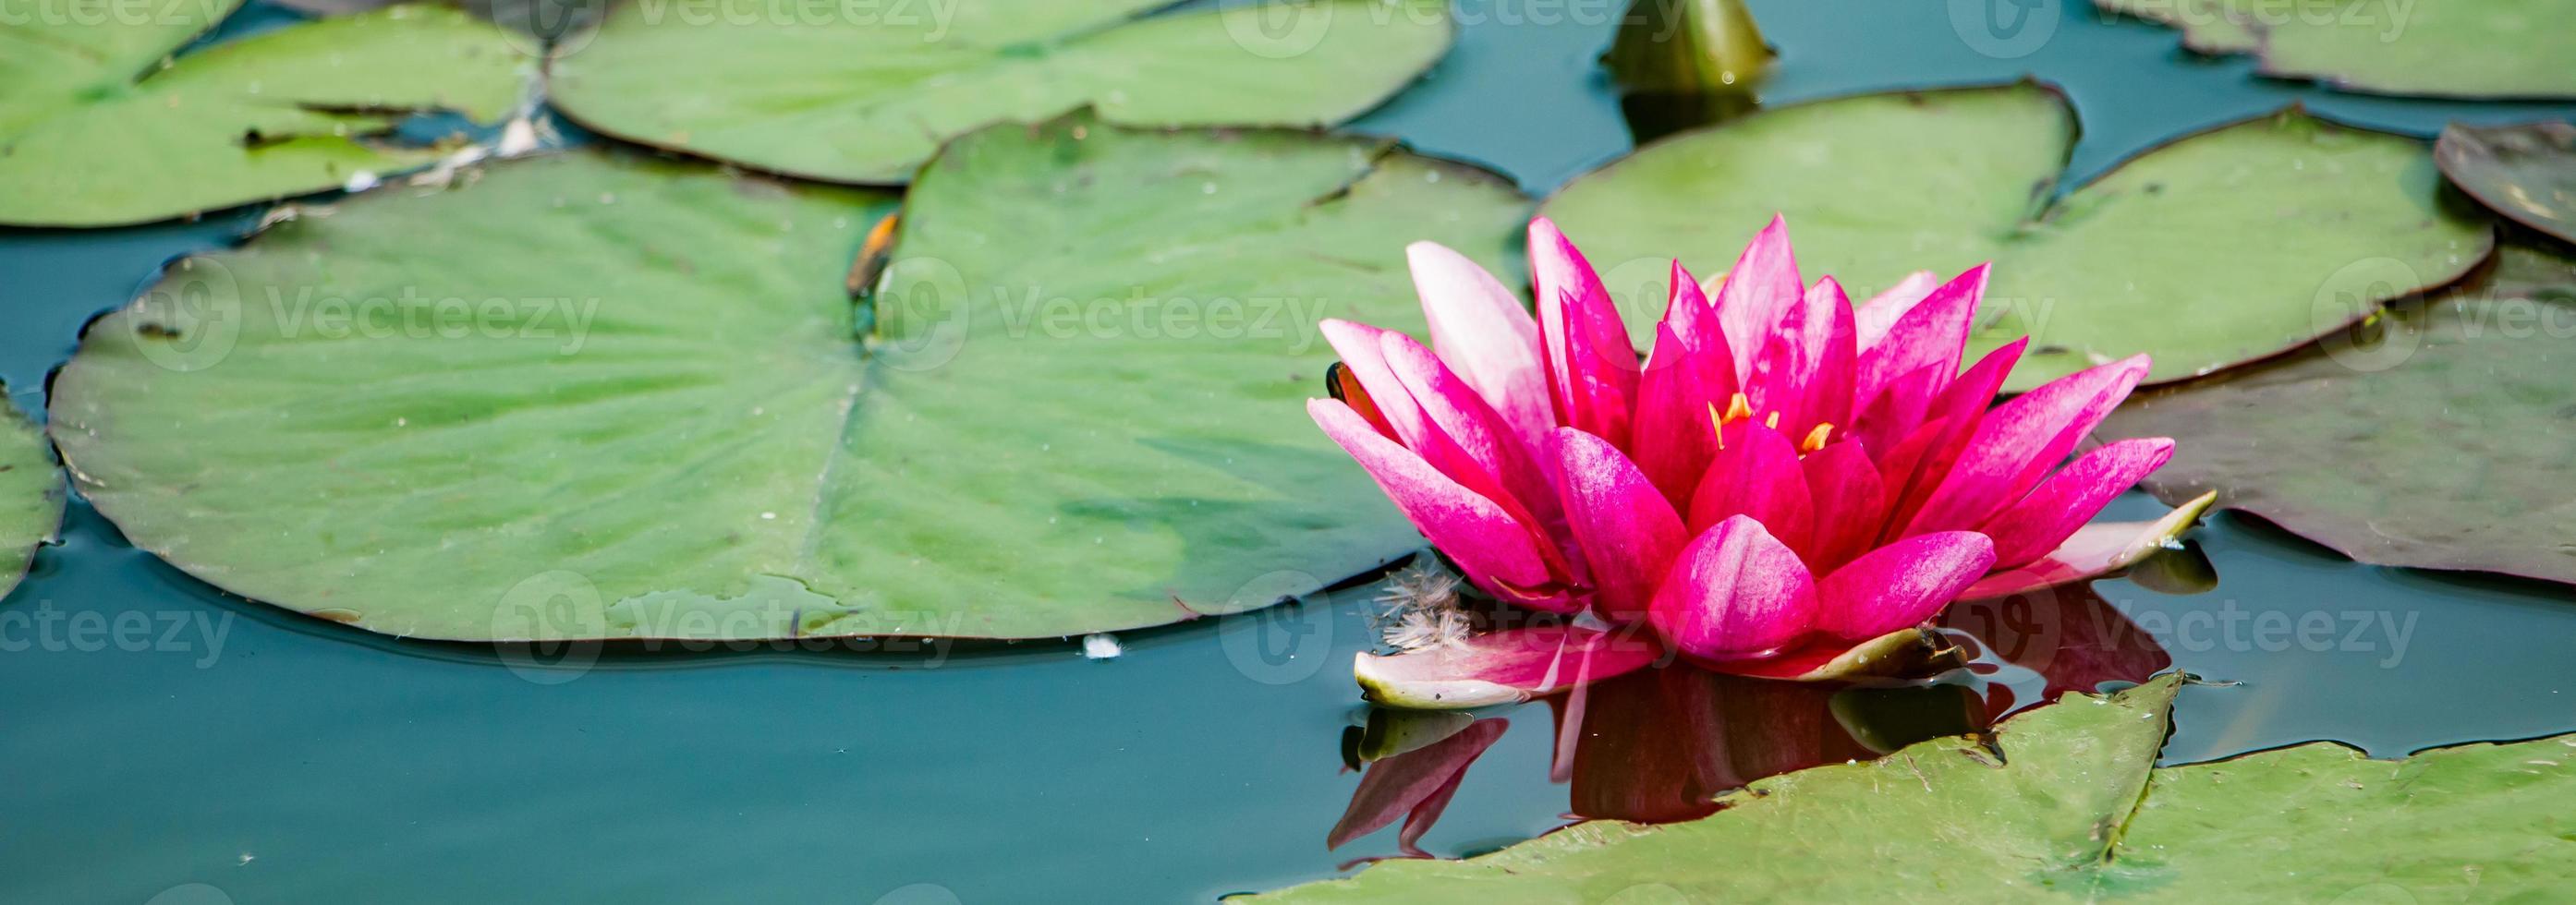 rosa lotus i klart vatten. vackra näckrosor i dammen. asiatisk blomma - en symbol för avkoppling. foto